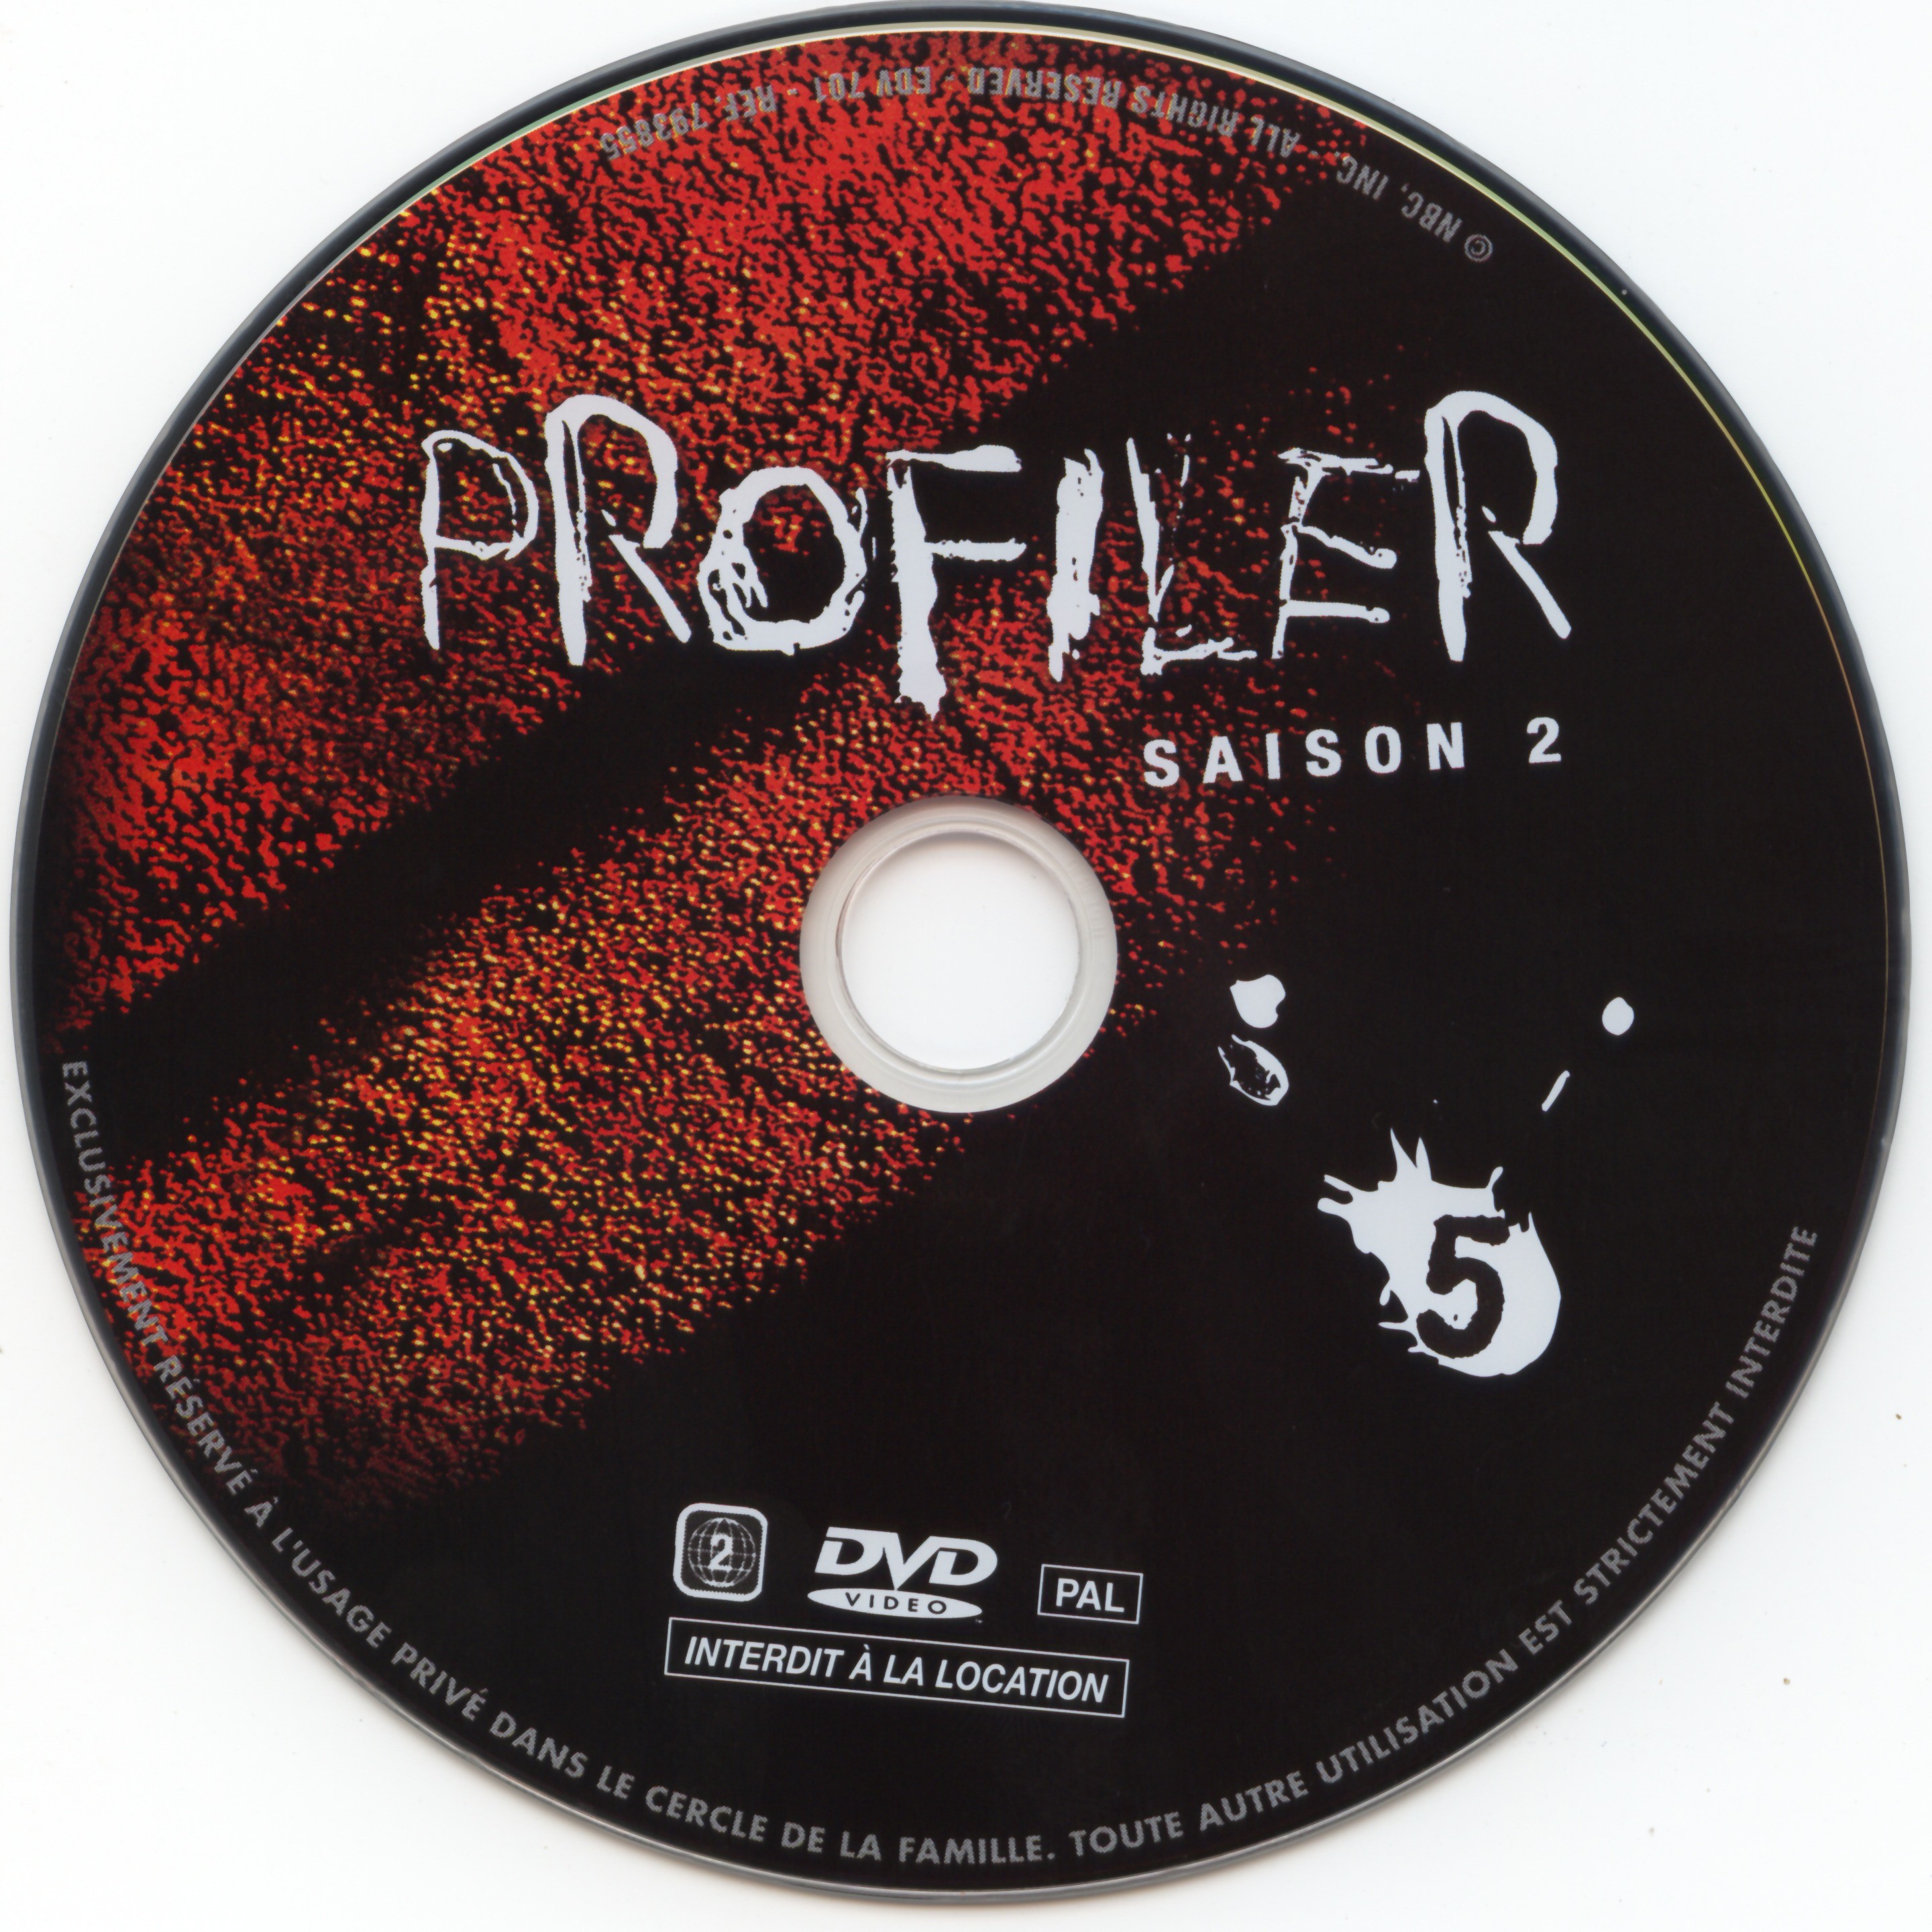 Profiler saison 2 DVD 5